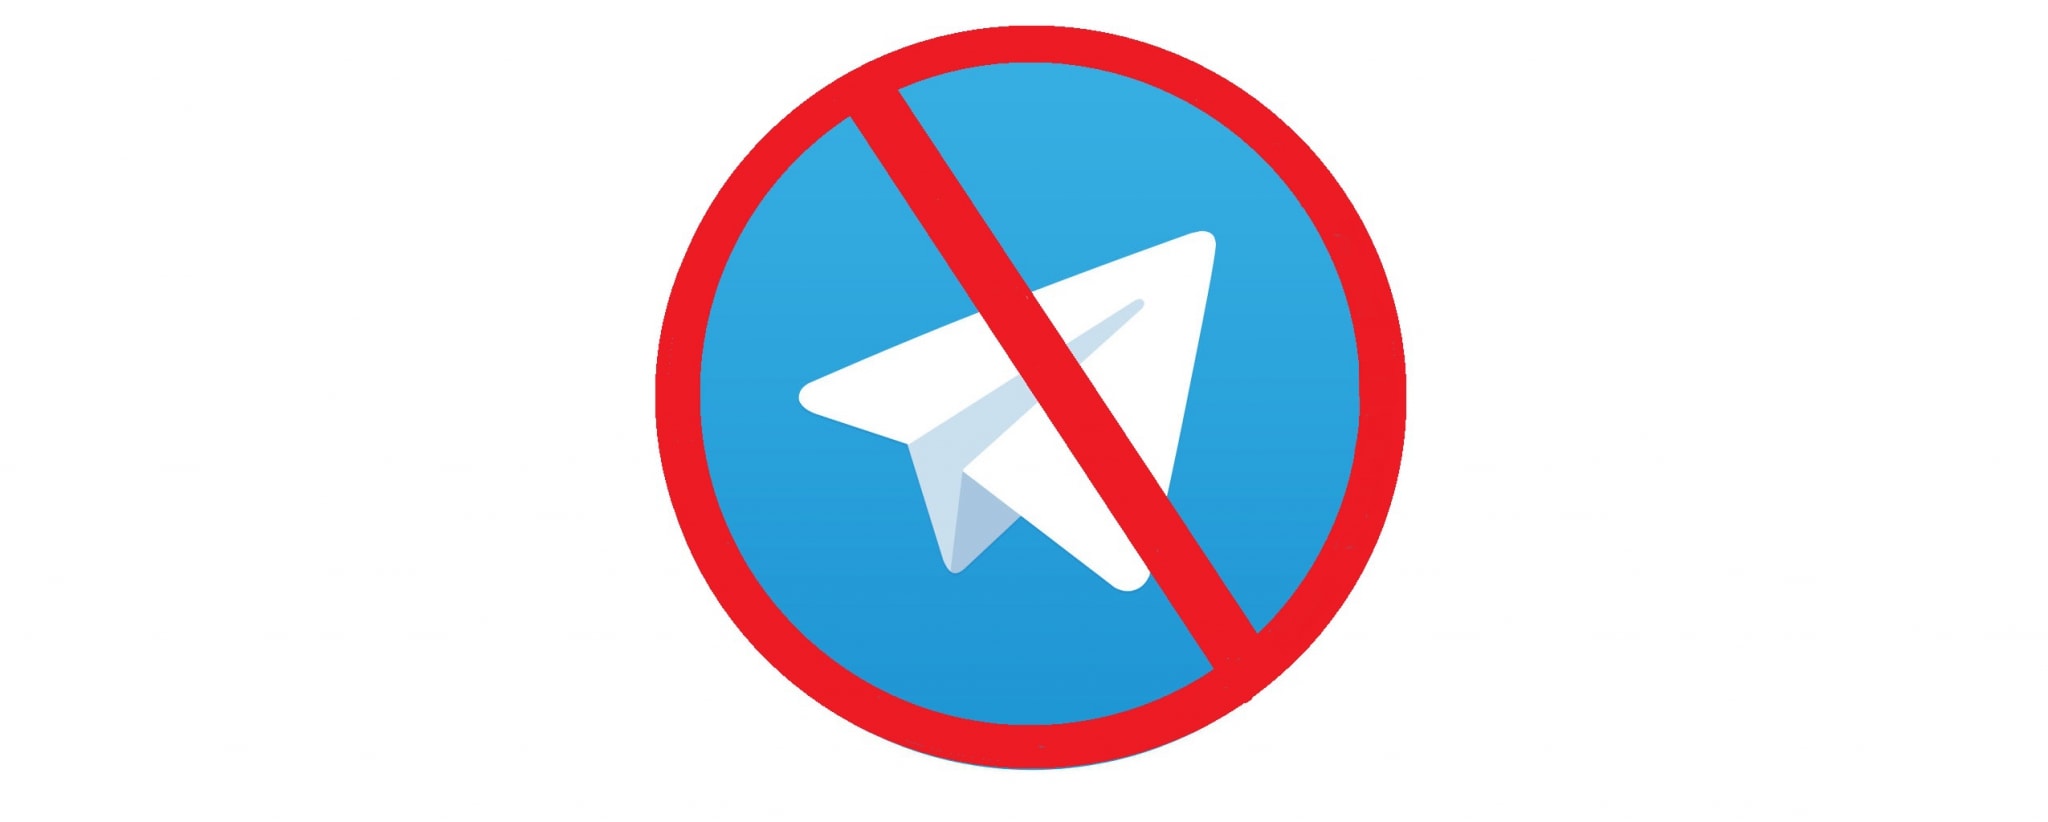 Как скачать видео с телеграмм если запрещено фото 97